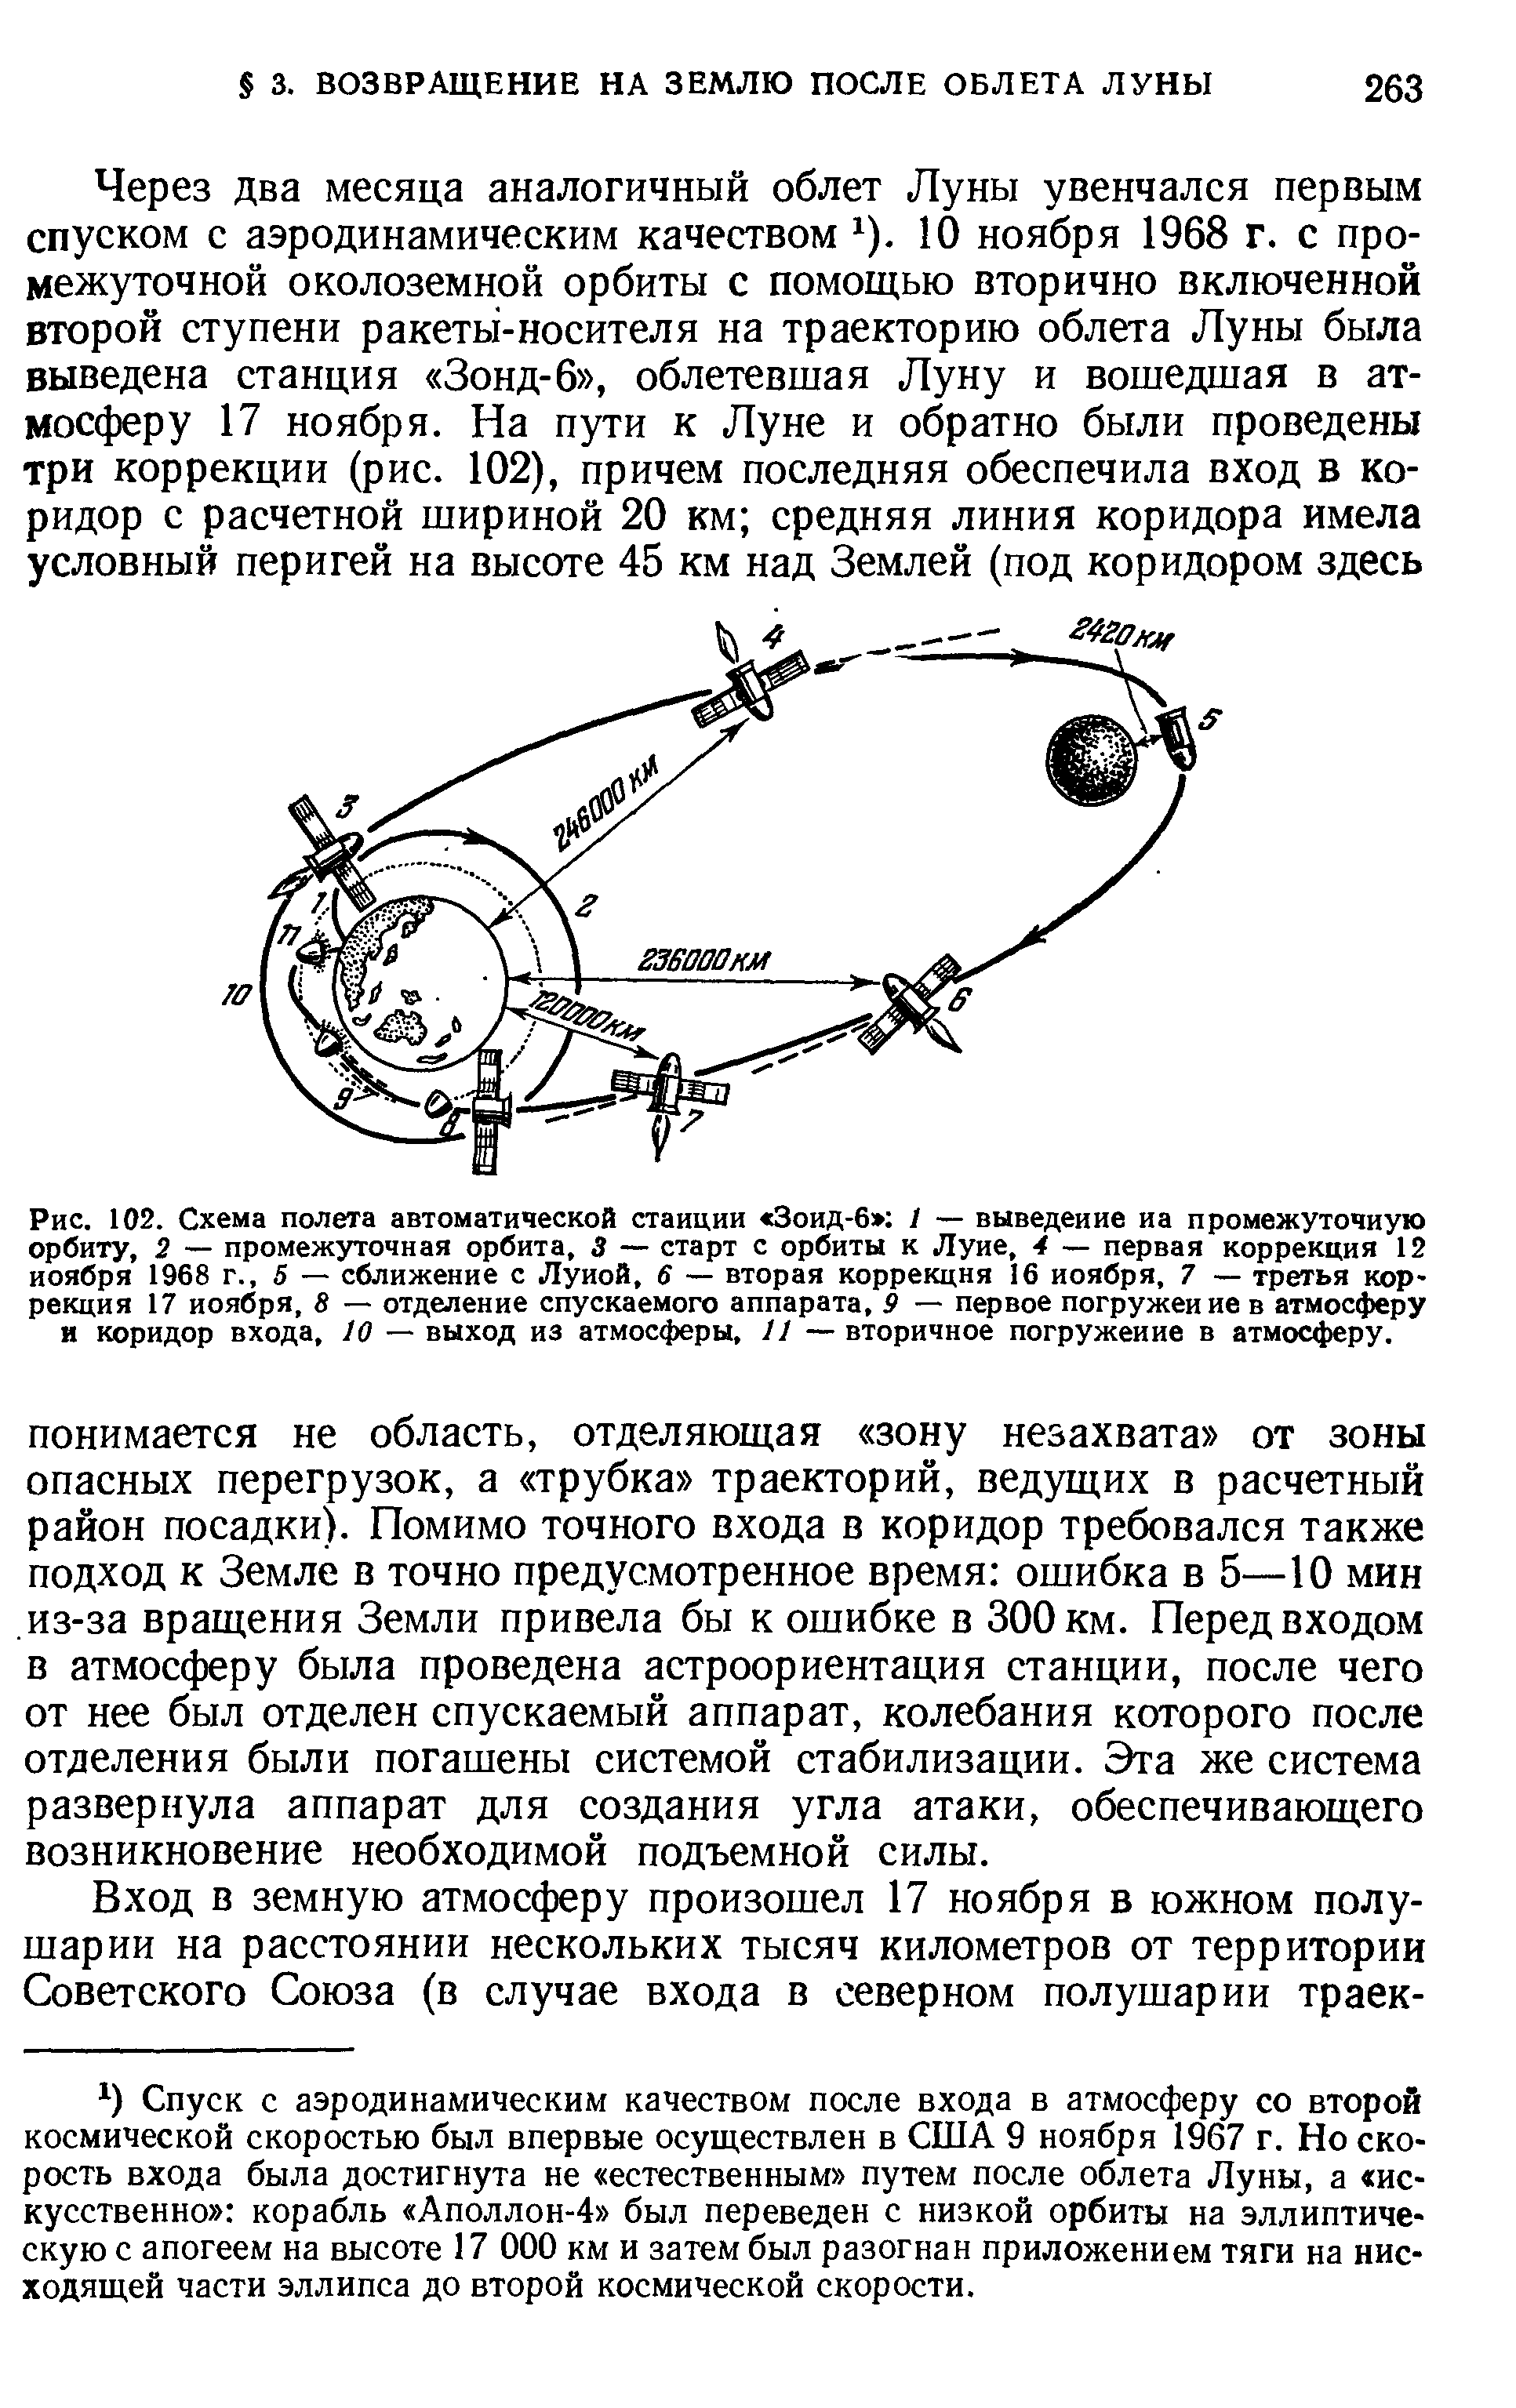 Рис. 102. Схема полета автоматической станции Зоид-6 / — выведение иа промежуточную орбиту, 2 — промежуточная орбита, 3 — старт с орбиты к Луне, 4 — первая коррекция 12 ноября 1968 г., 5 — сближение с Луной, 6 — вторая коррекция 16 ноября, 7 — третья коррекция 17 ноября, 8 — отделение спускаемого аппарата, 9 — первое погружение в атмосферу и коридор входа, 10 — выход из атмосферы, 11 — вторичное погружение в атмосферу.
